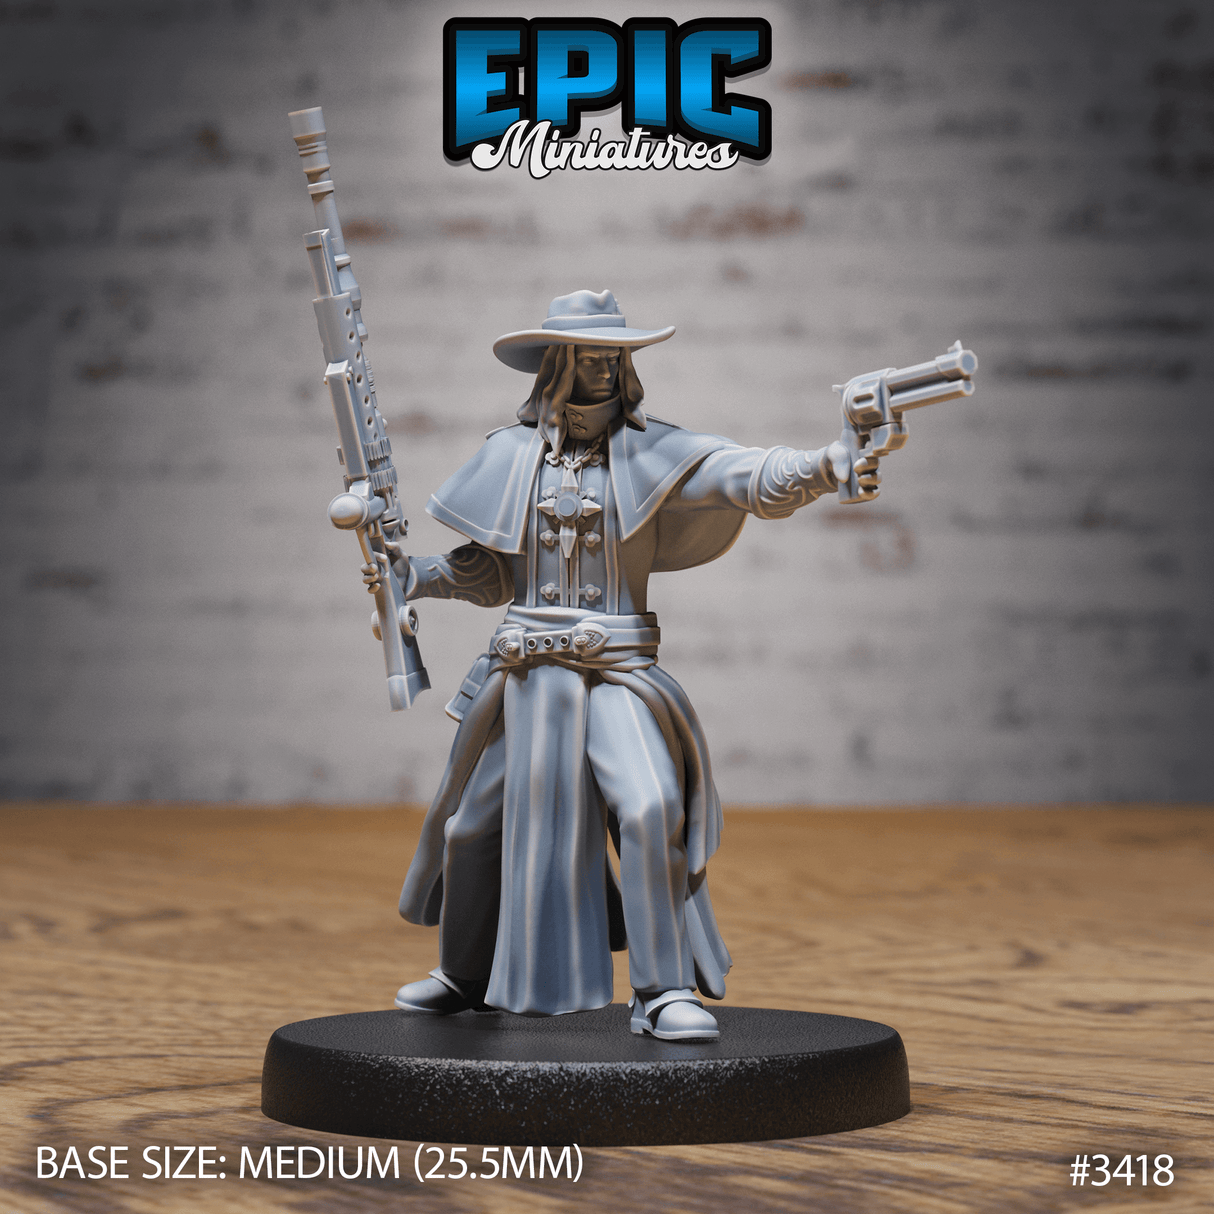 Epic Miniatures' Holy Gunslinger Figur in 4 Posen - Stehend, Laufend, mit Gewehr und Pistole Schießend